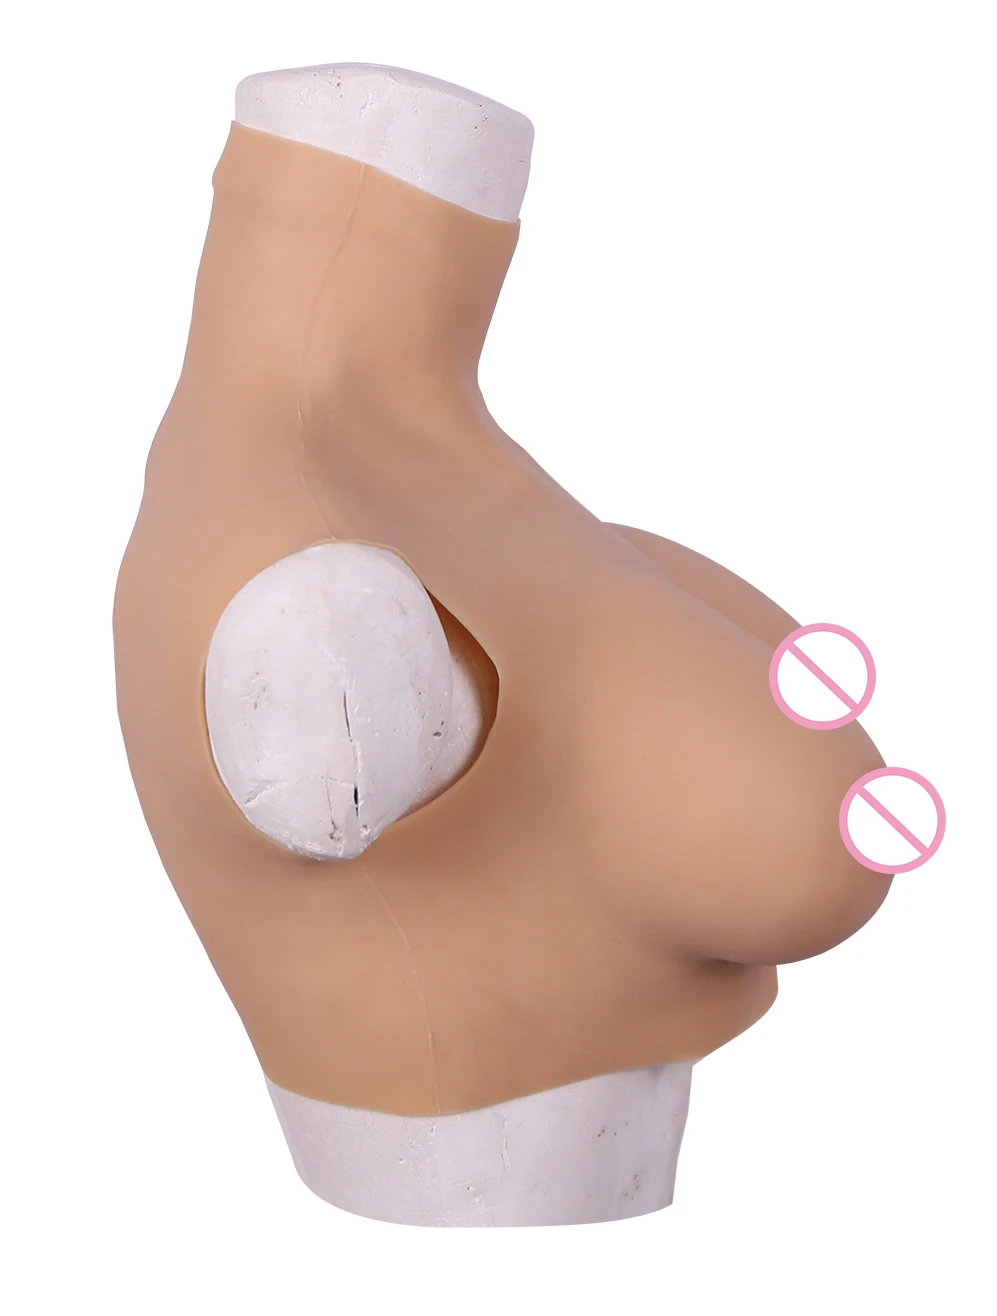 75D силиконовые формы груди При мастэктомии женщины усилитель груди делая баланс тела искусственные груди грудь для трансвеститов